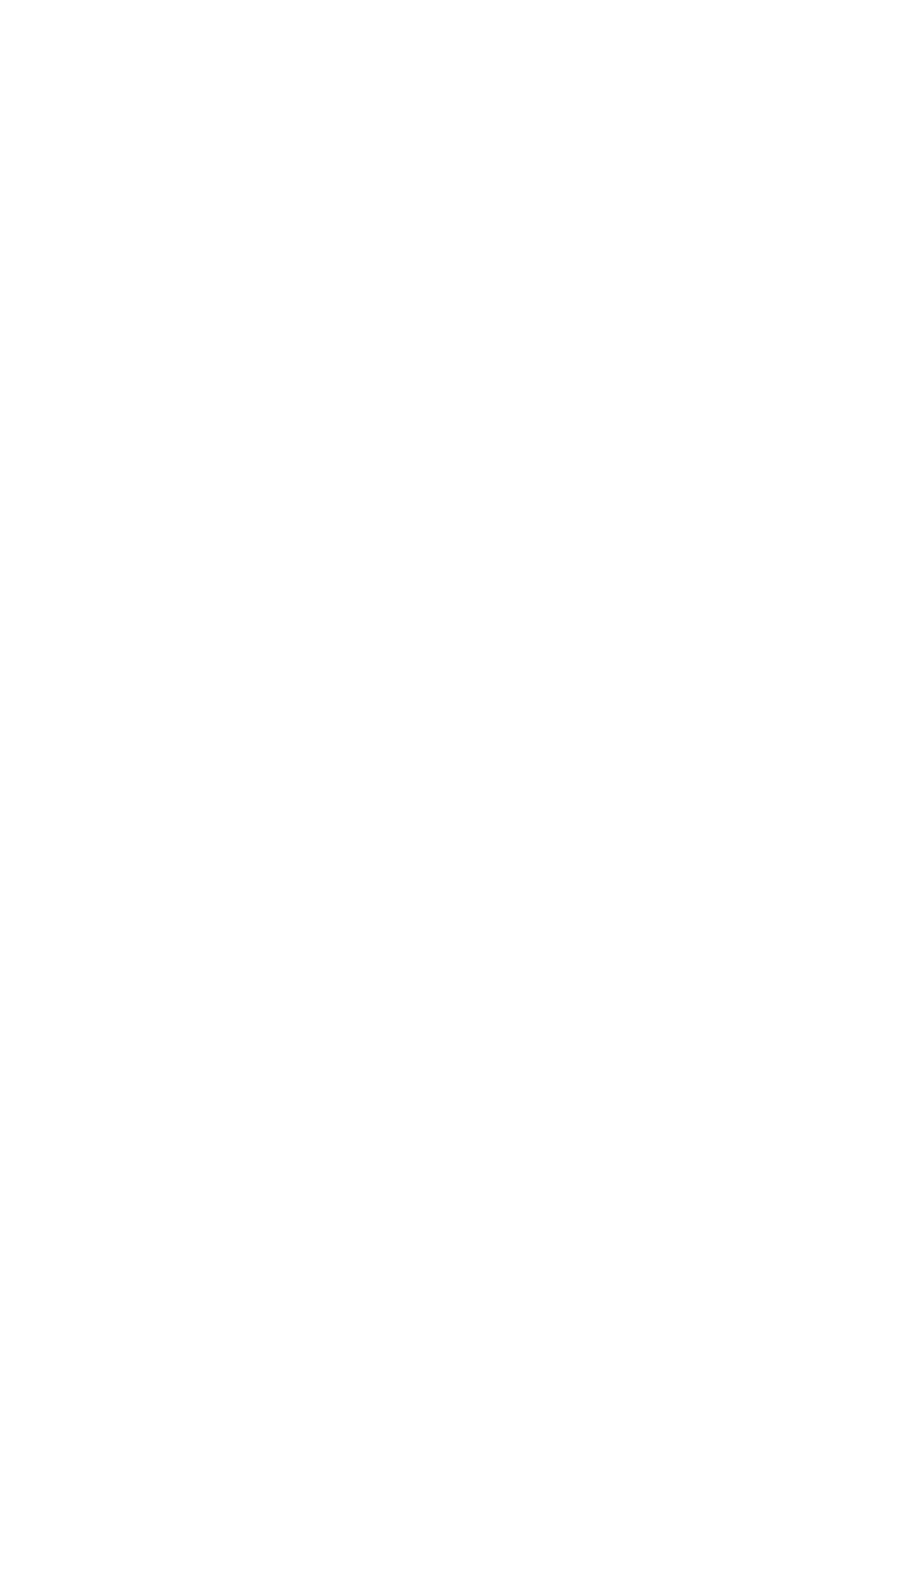 29 Juni 2019  Nos ta Muchanan Sabi Puzzel y Scop Bala Jello, Nuggets y Cookies Strawberry y Bacoba  Chicken Cutlet y    